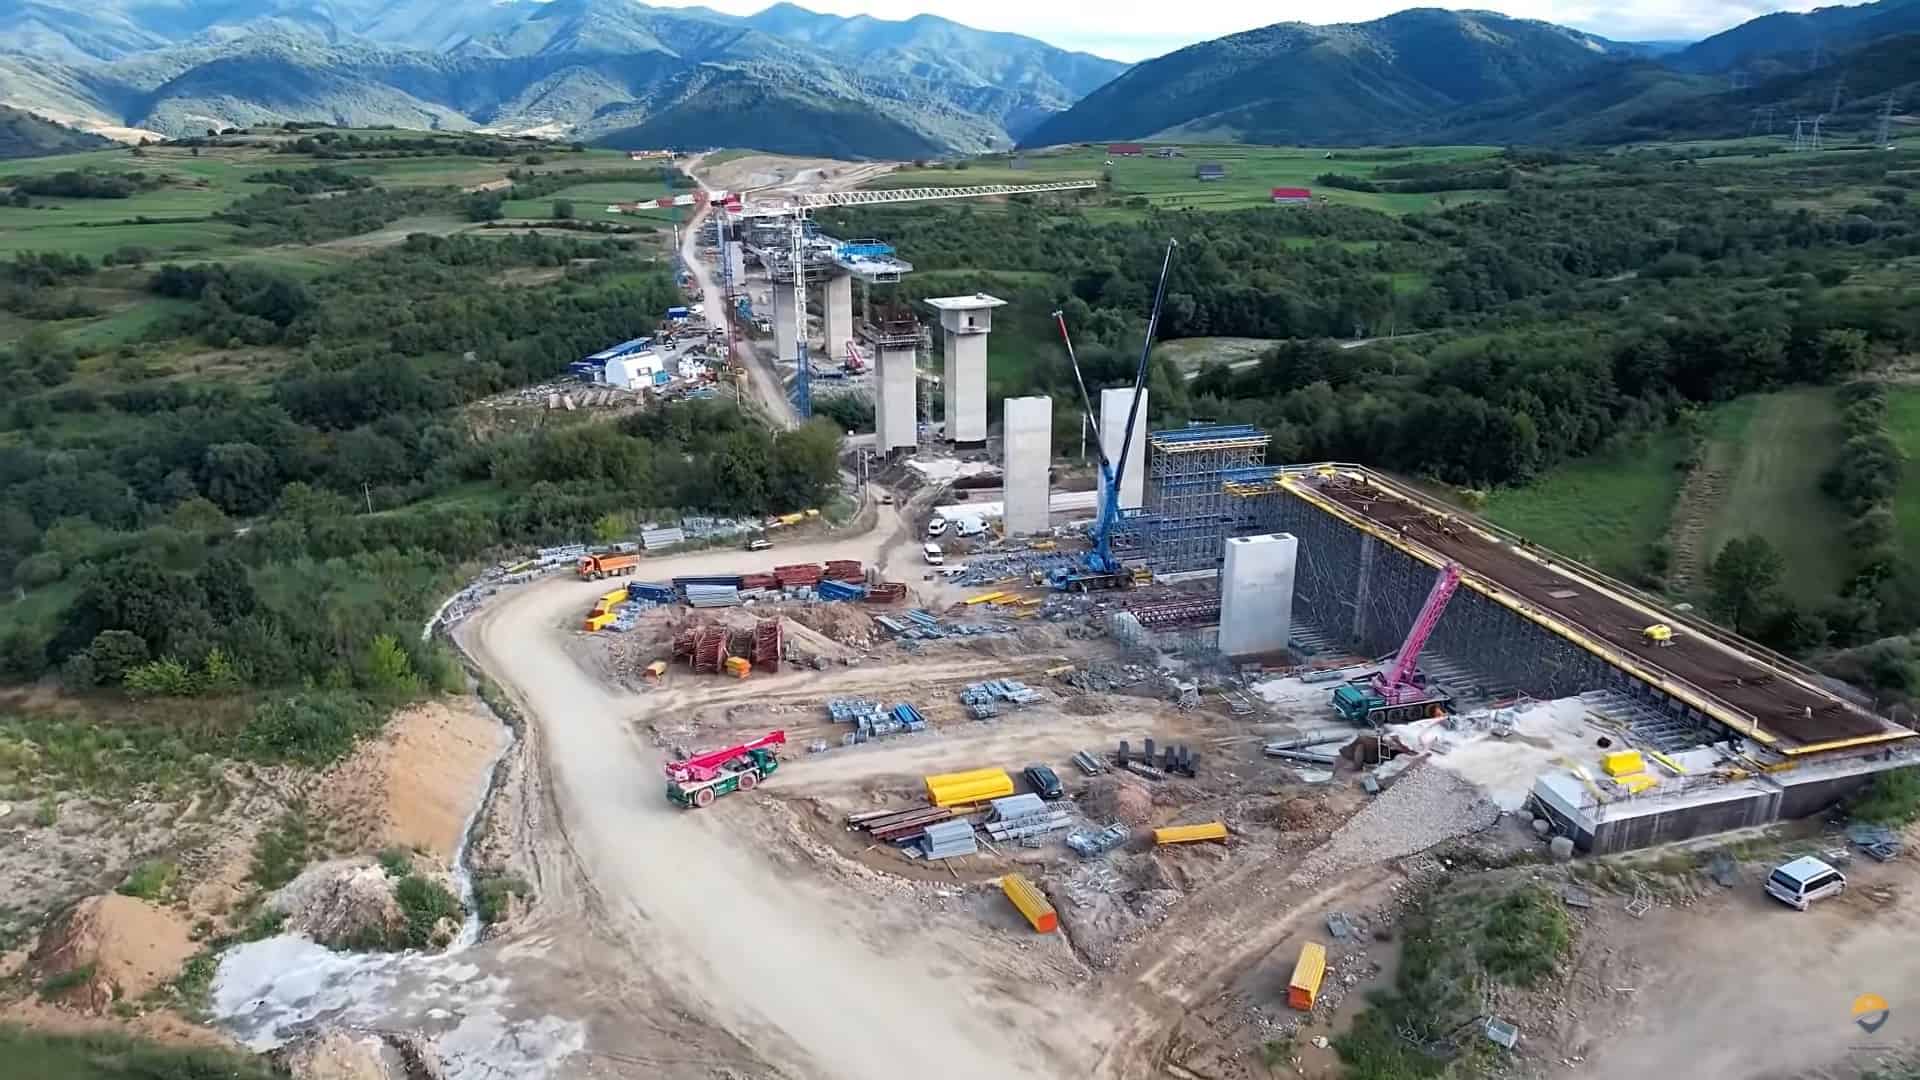 video lucrările la lotul 1 al autostrăzii sibiu-piteşti. s-a turnat primul strat de asfalt. viaductul de la tălmăcel arată spectaculos